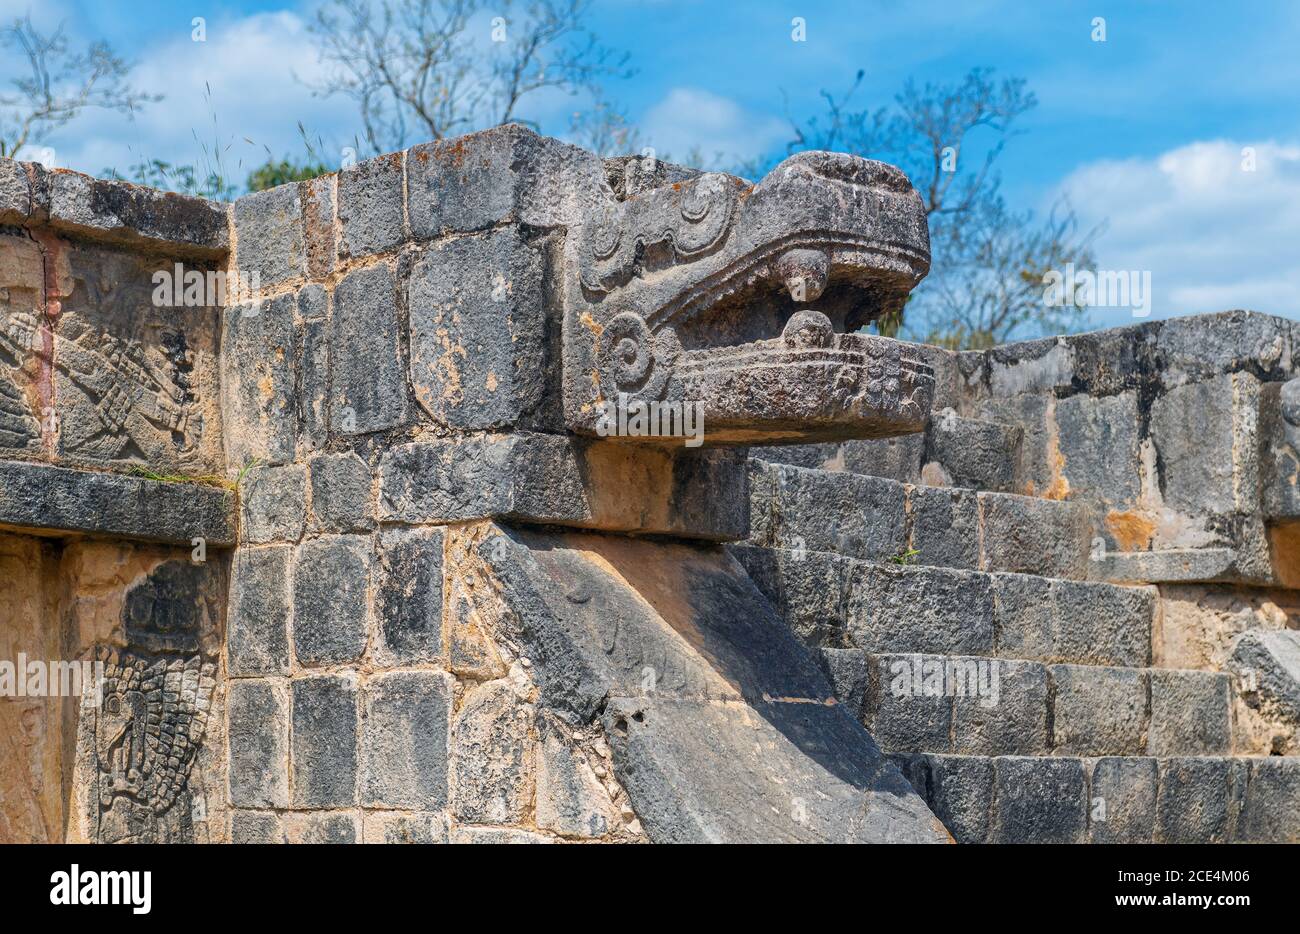 Escultura de piedra de la serpiente emplumada y dios Quetzalcoatl, deidad de la creación y la vida para la civilización azteca y maya, Chichen Itza, México. Foto de stock